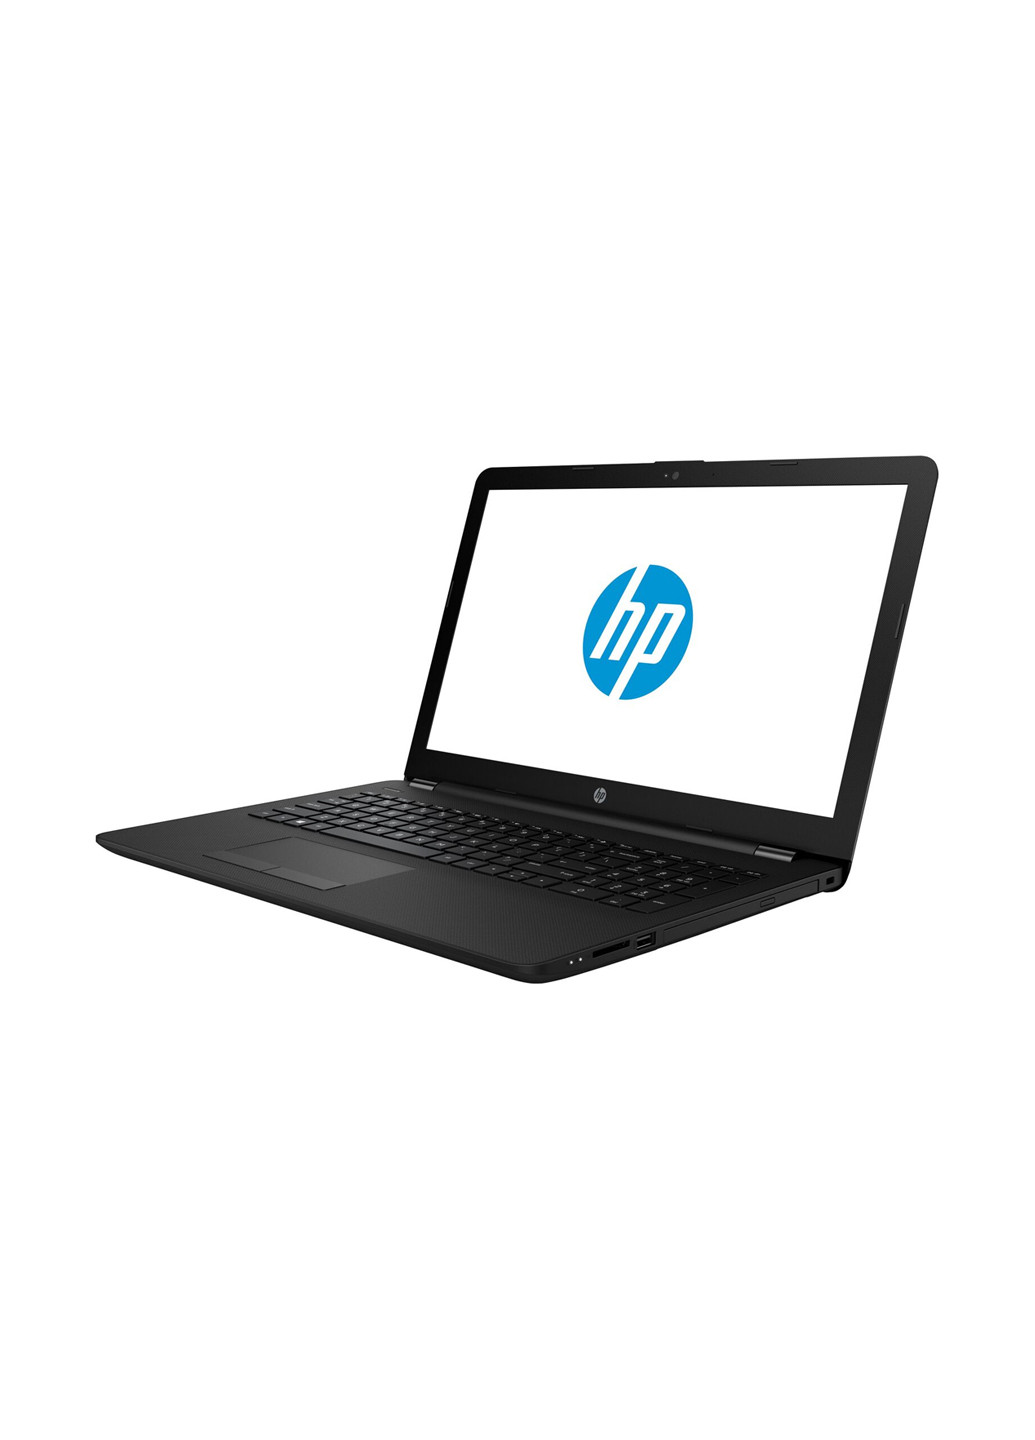 Ноутбук HP 15-ra047ur (3qt61ea) black (136402387)